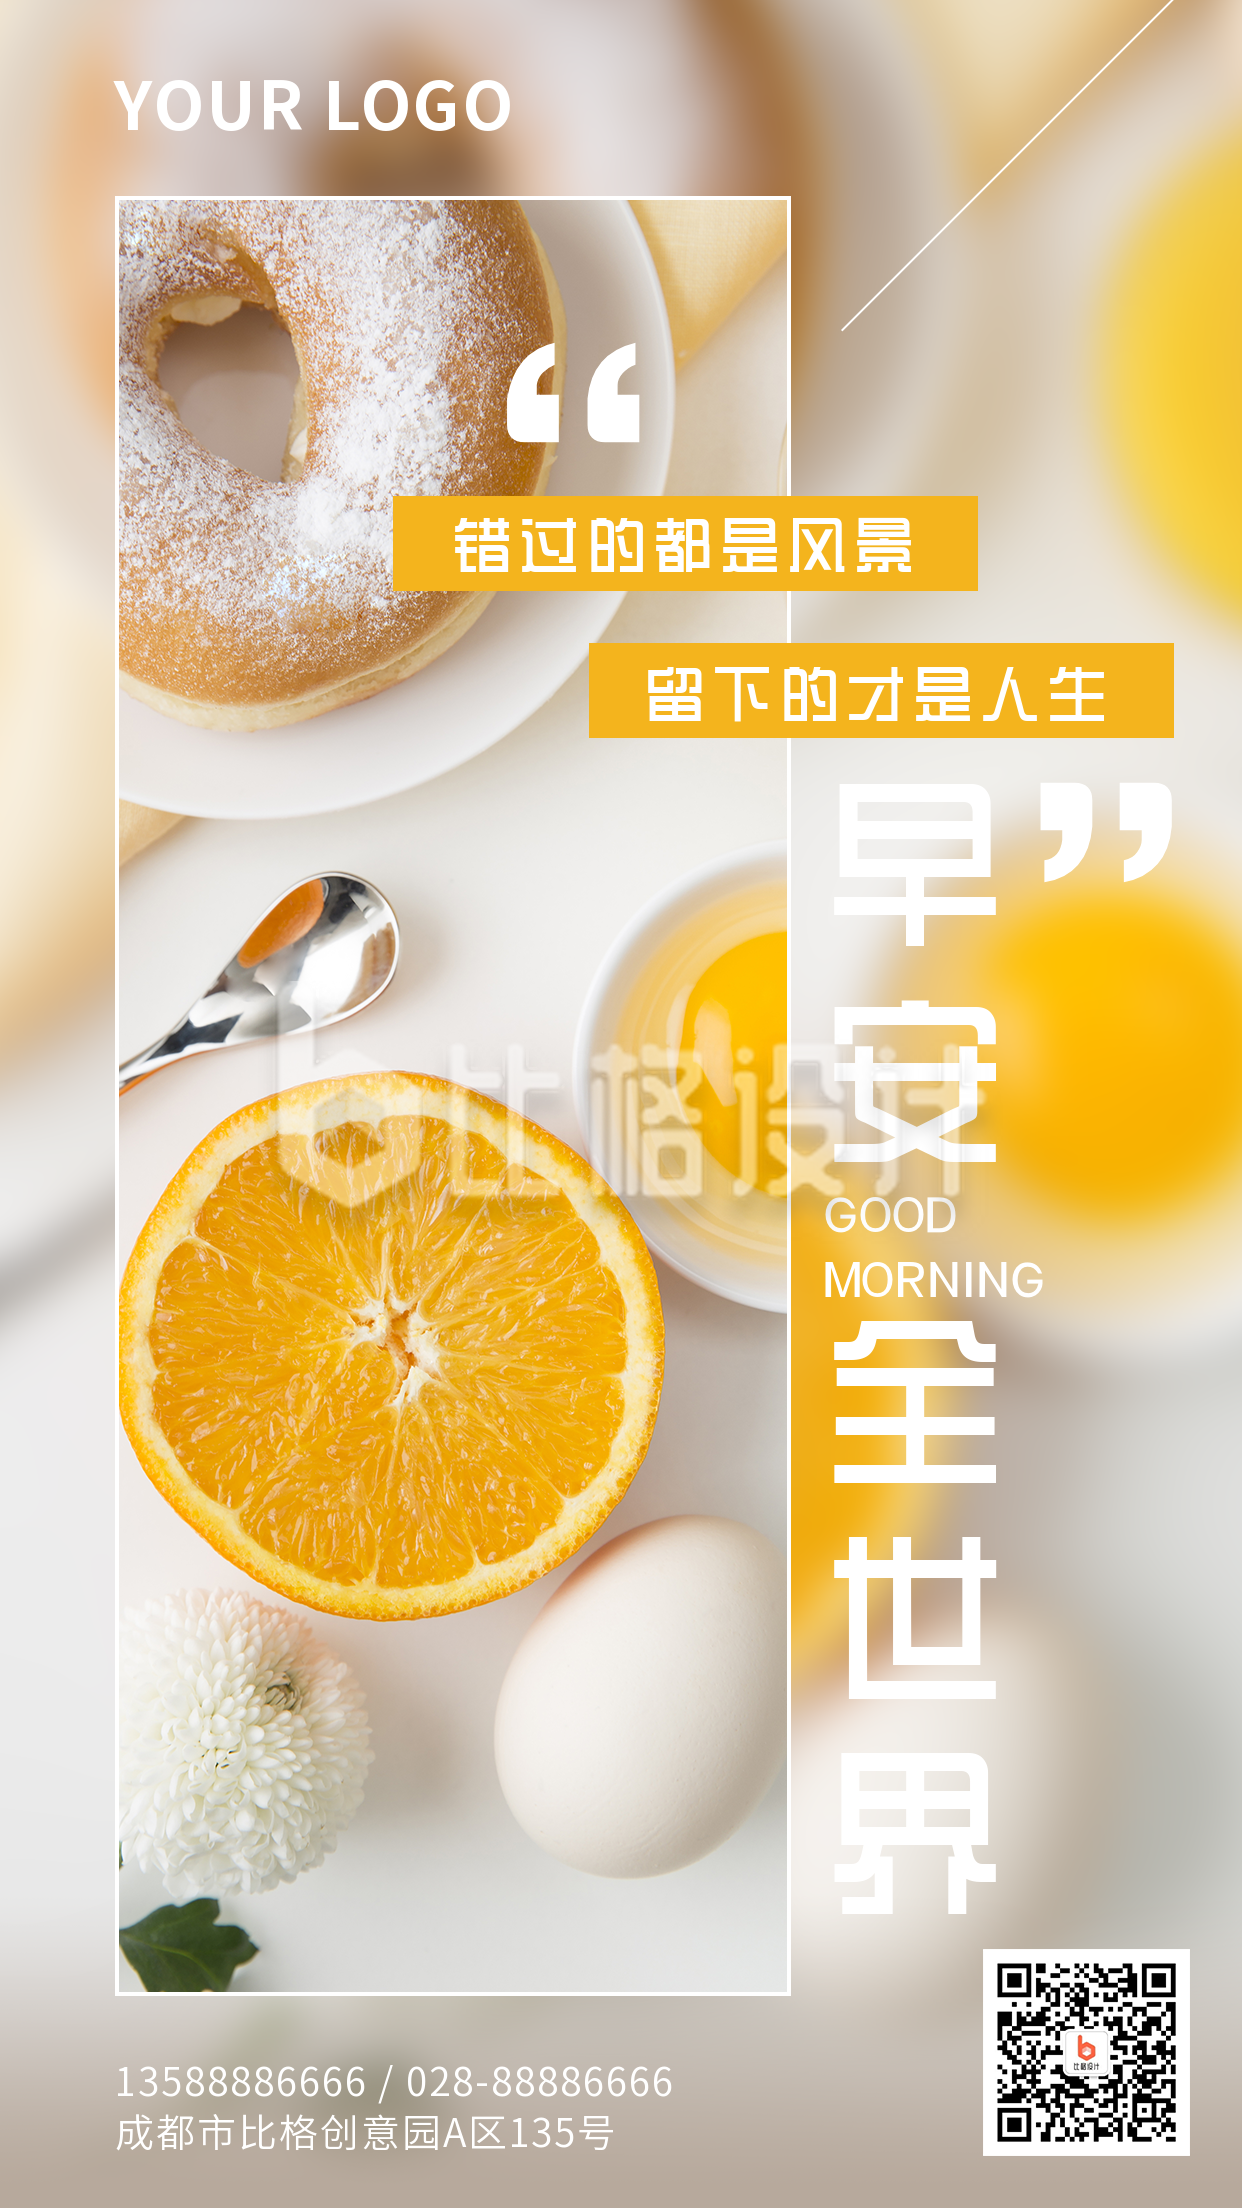 日签早安早餐橙子鸡蛋实景手机海报